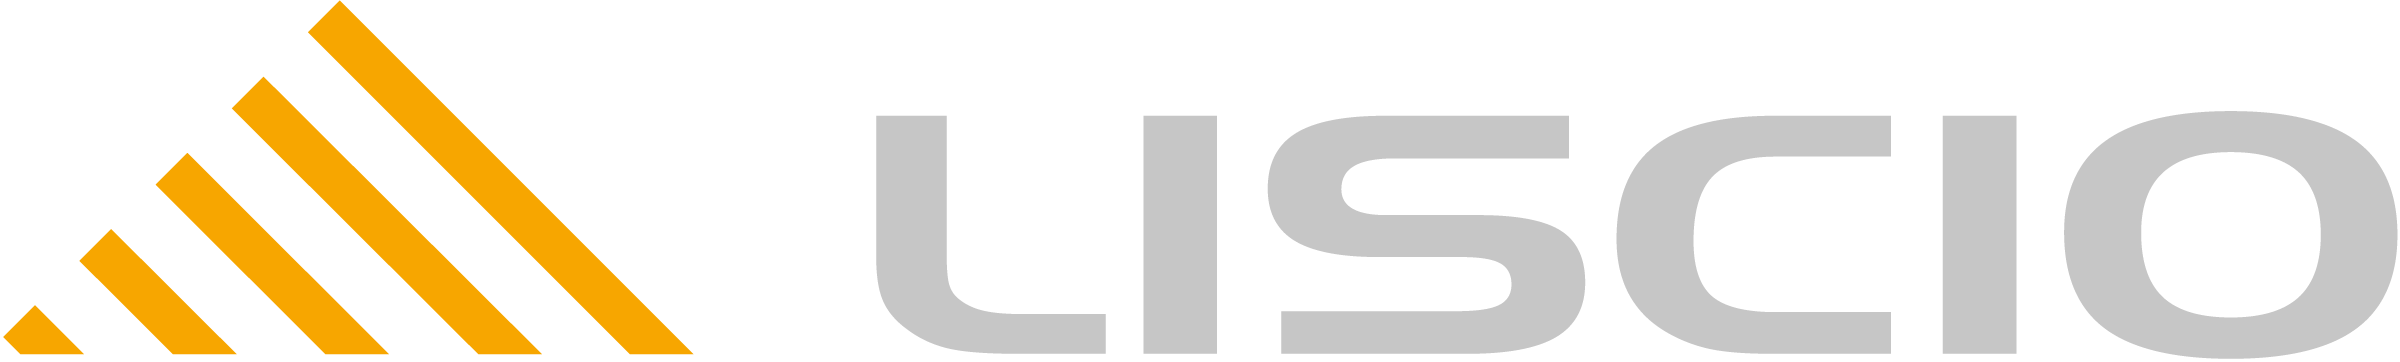 Liscio-logo